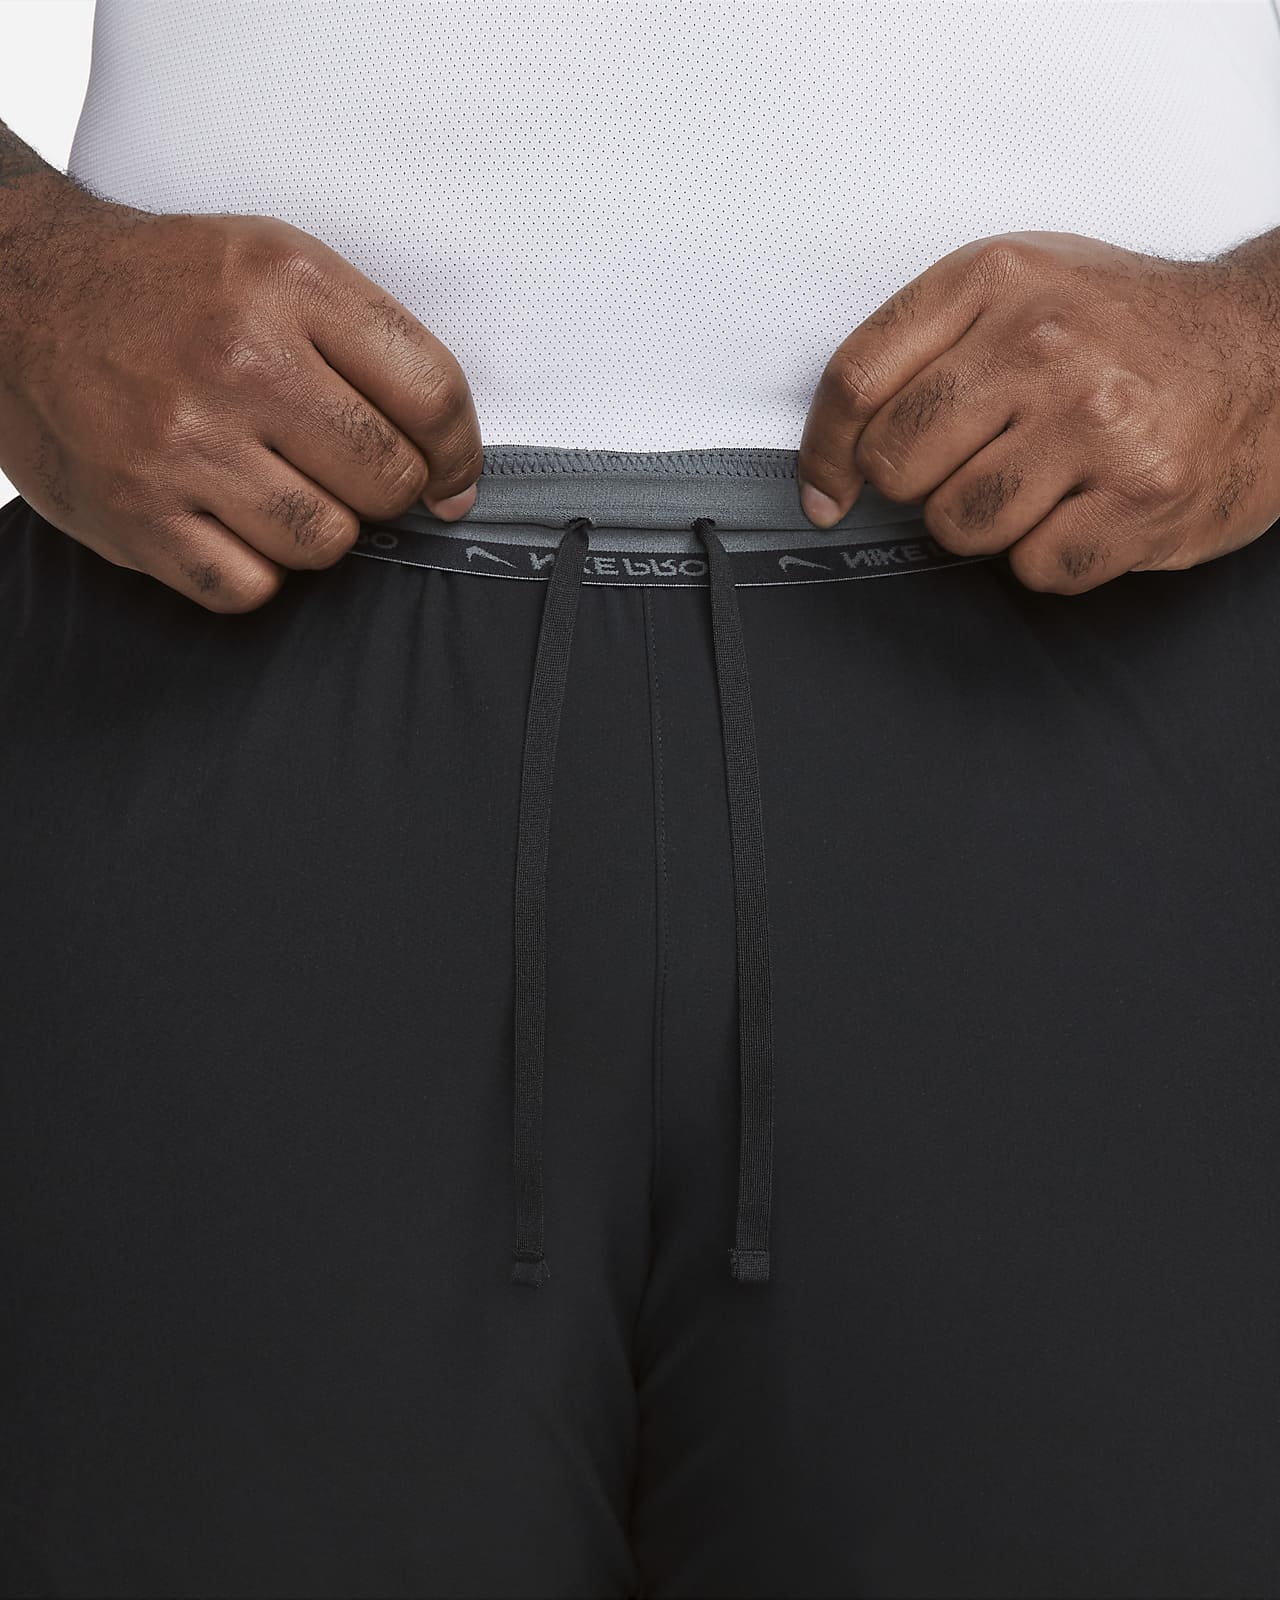 Nike Pro Dri-Fit Men's Tight Training Shorts Size XL DD1917-100 White/Black